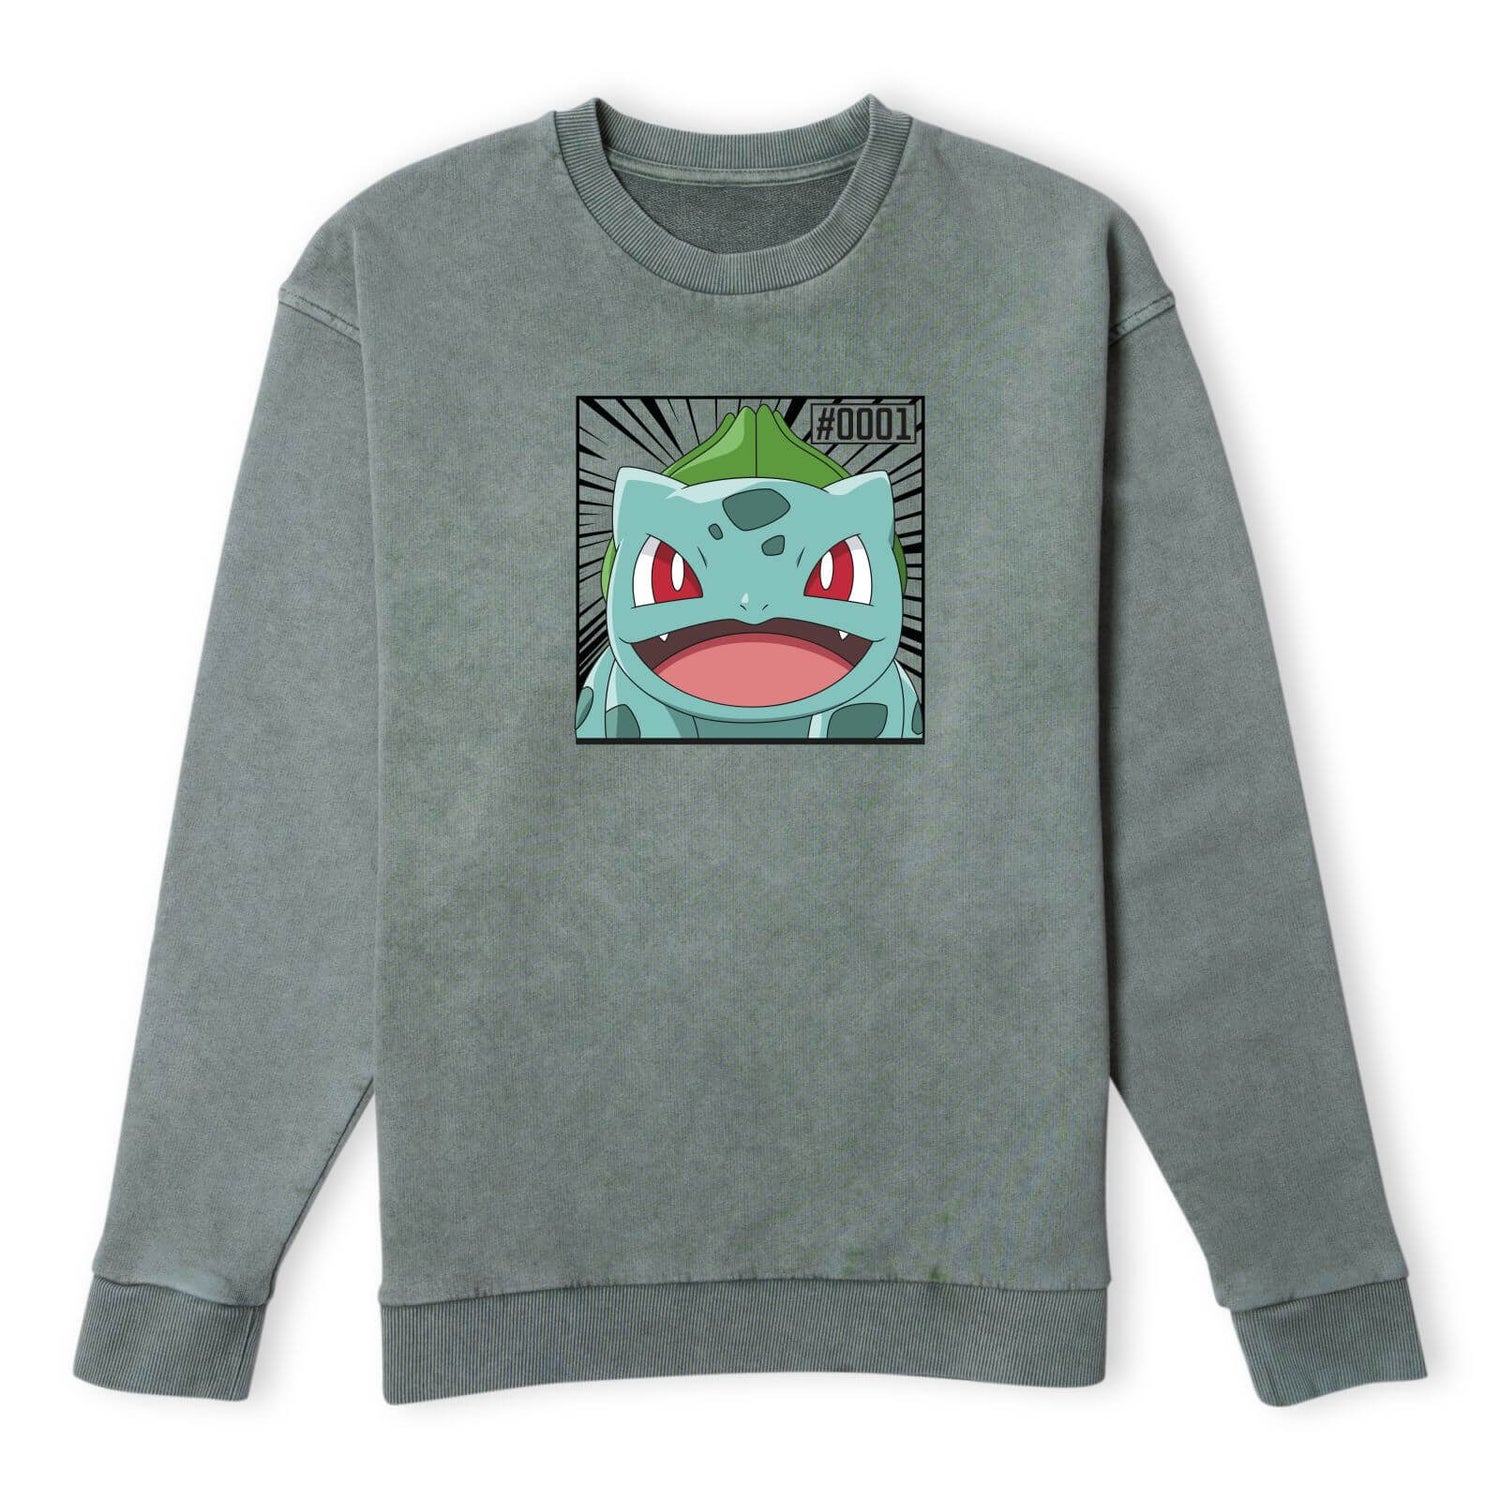 Pokémon Pokédex Bulbasaur #0001 Sweatshirt - Khaki Acid Wash